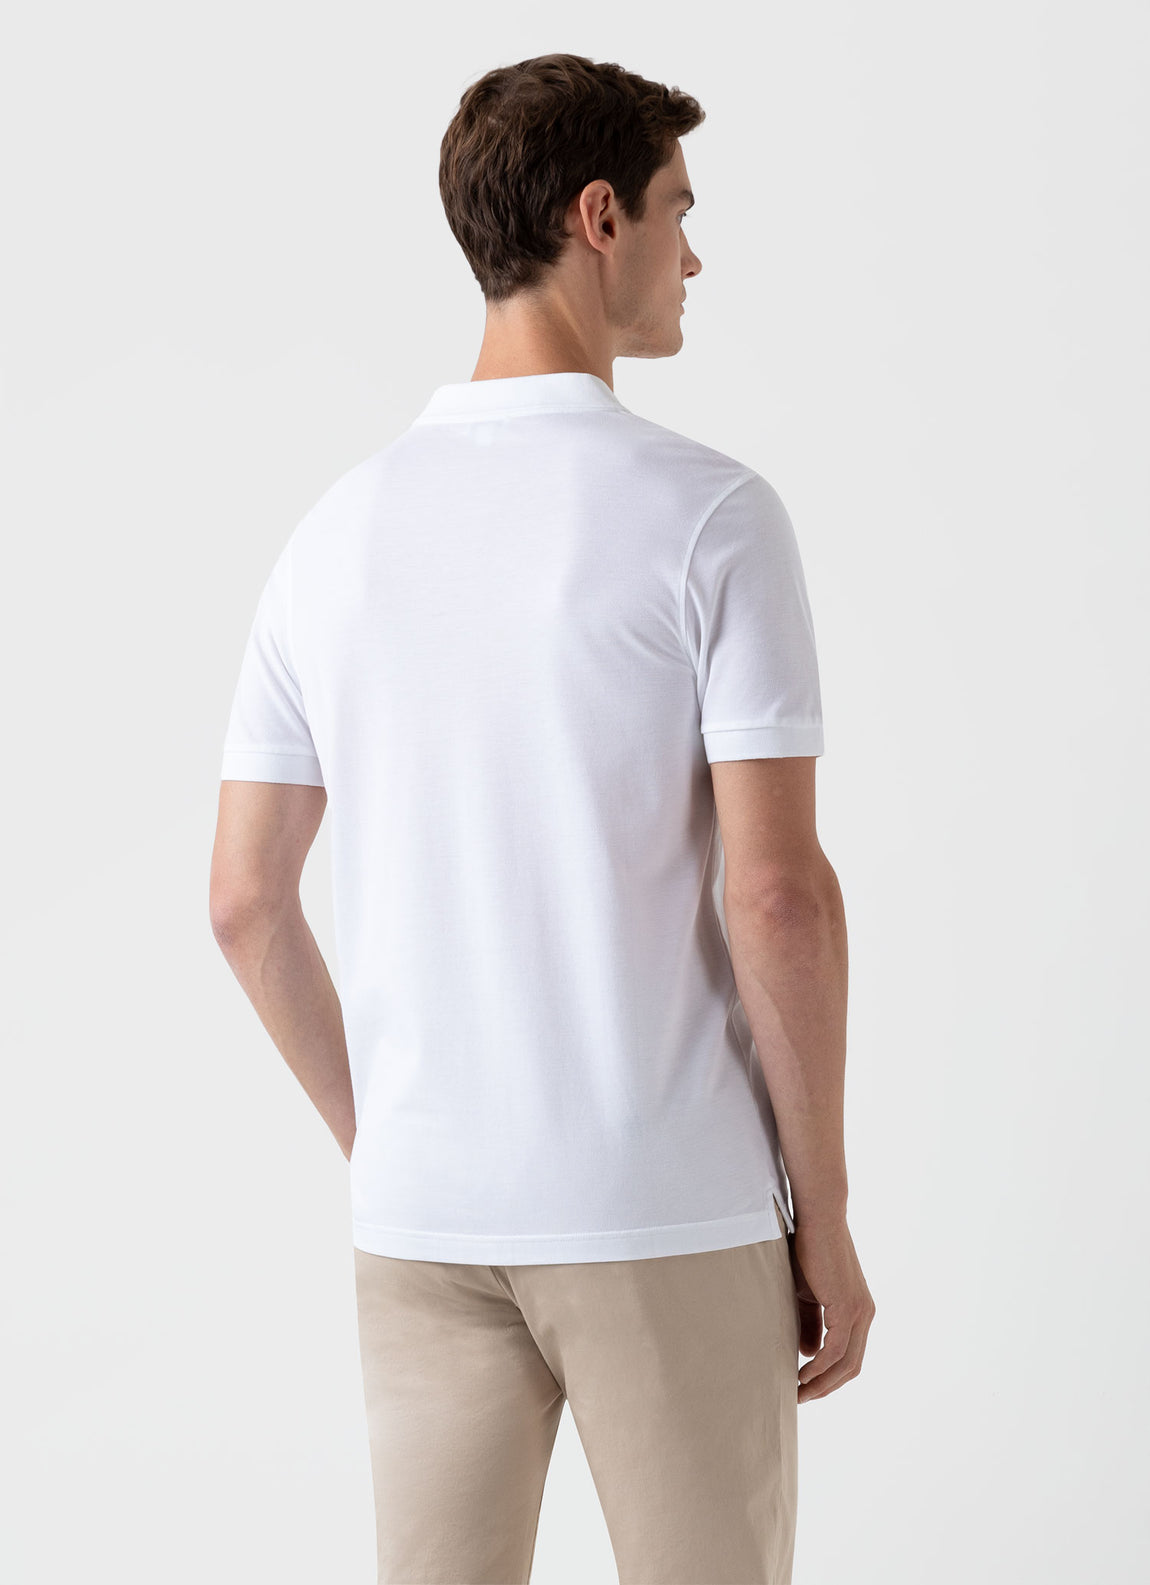 Men's Piqué Polo Shirt in White | Sunspel